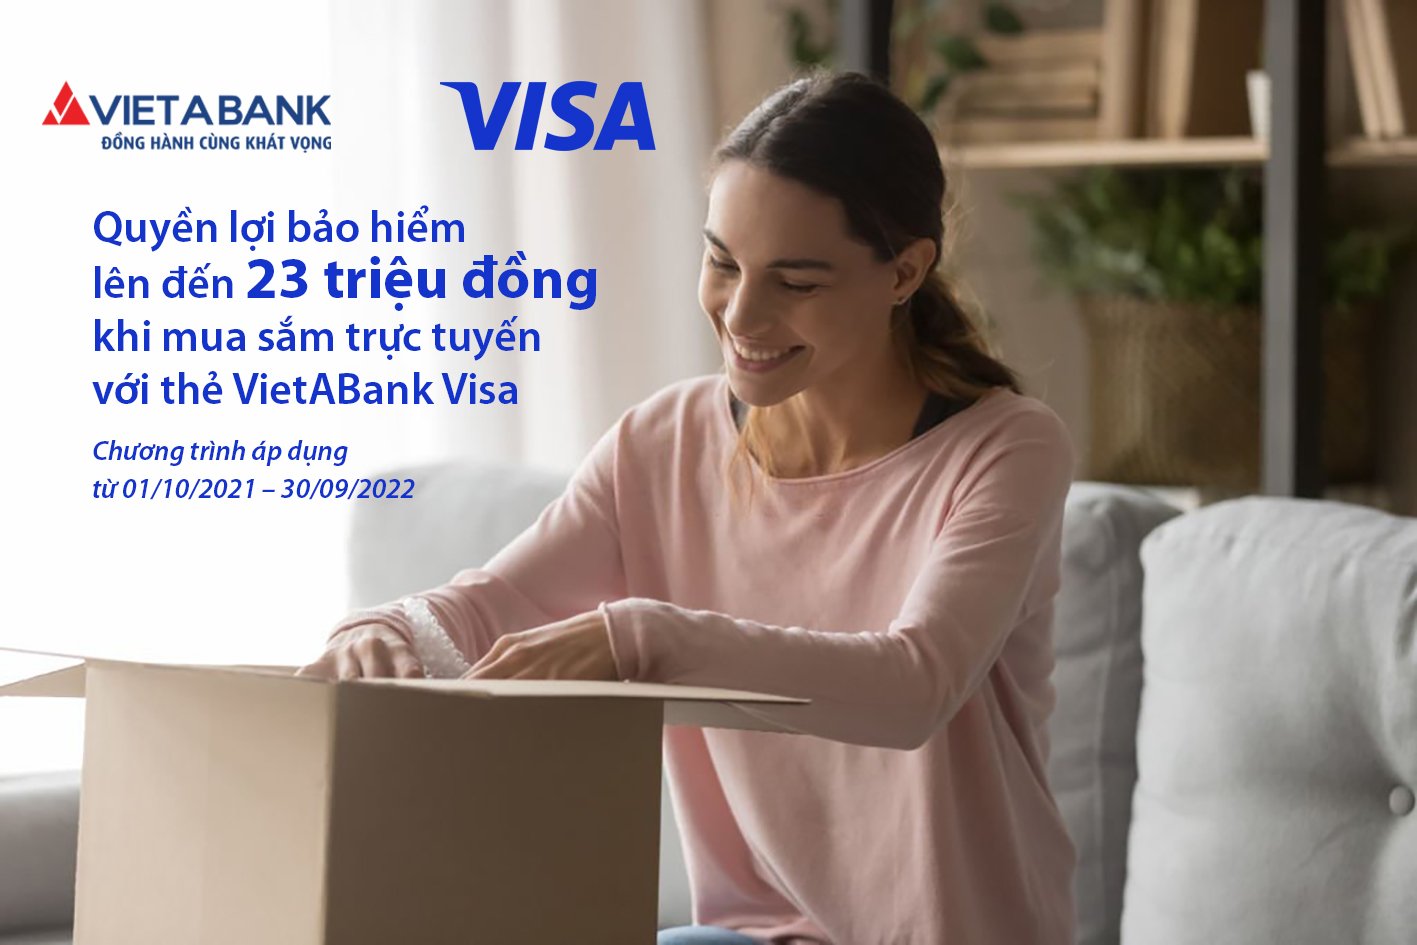 Quyền lợi bảo hiểm lên đến 23 triệu đồng khi mua sắm trực tuyến với thẻ VietABank Visa